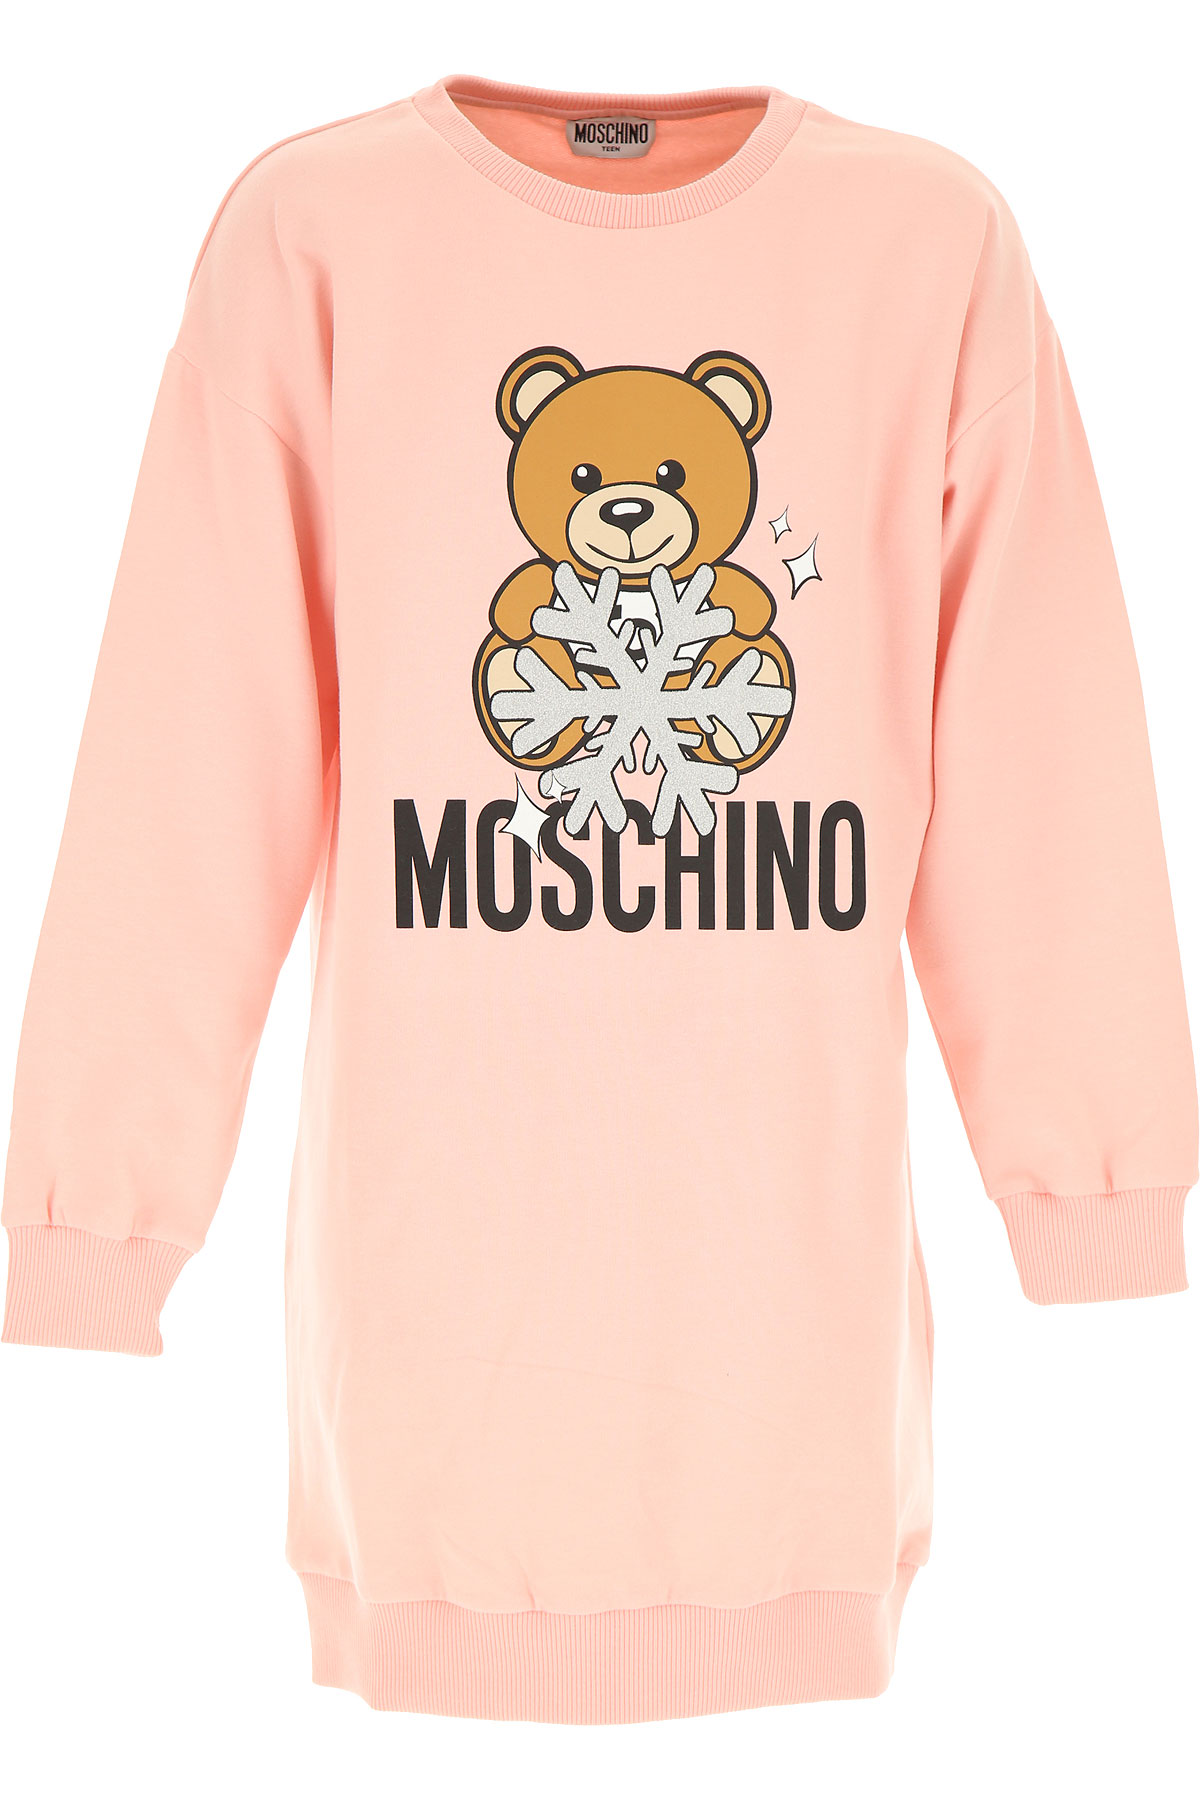 Moschino Kleid für Mädchen Günstig im Sale, Pink, Baumwolle, 2017, 10Y 12Y 14Y 4Y 5Y 6Y 8Y